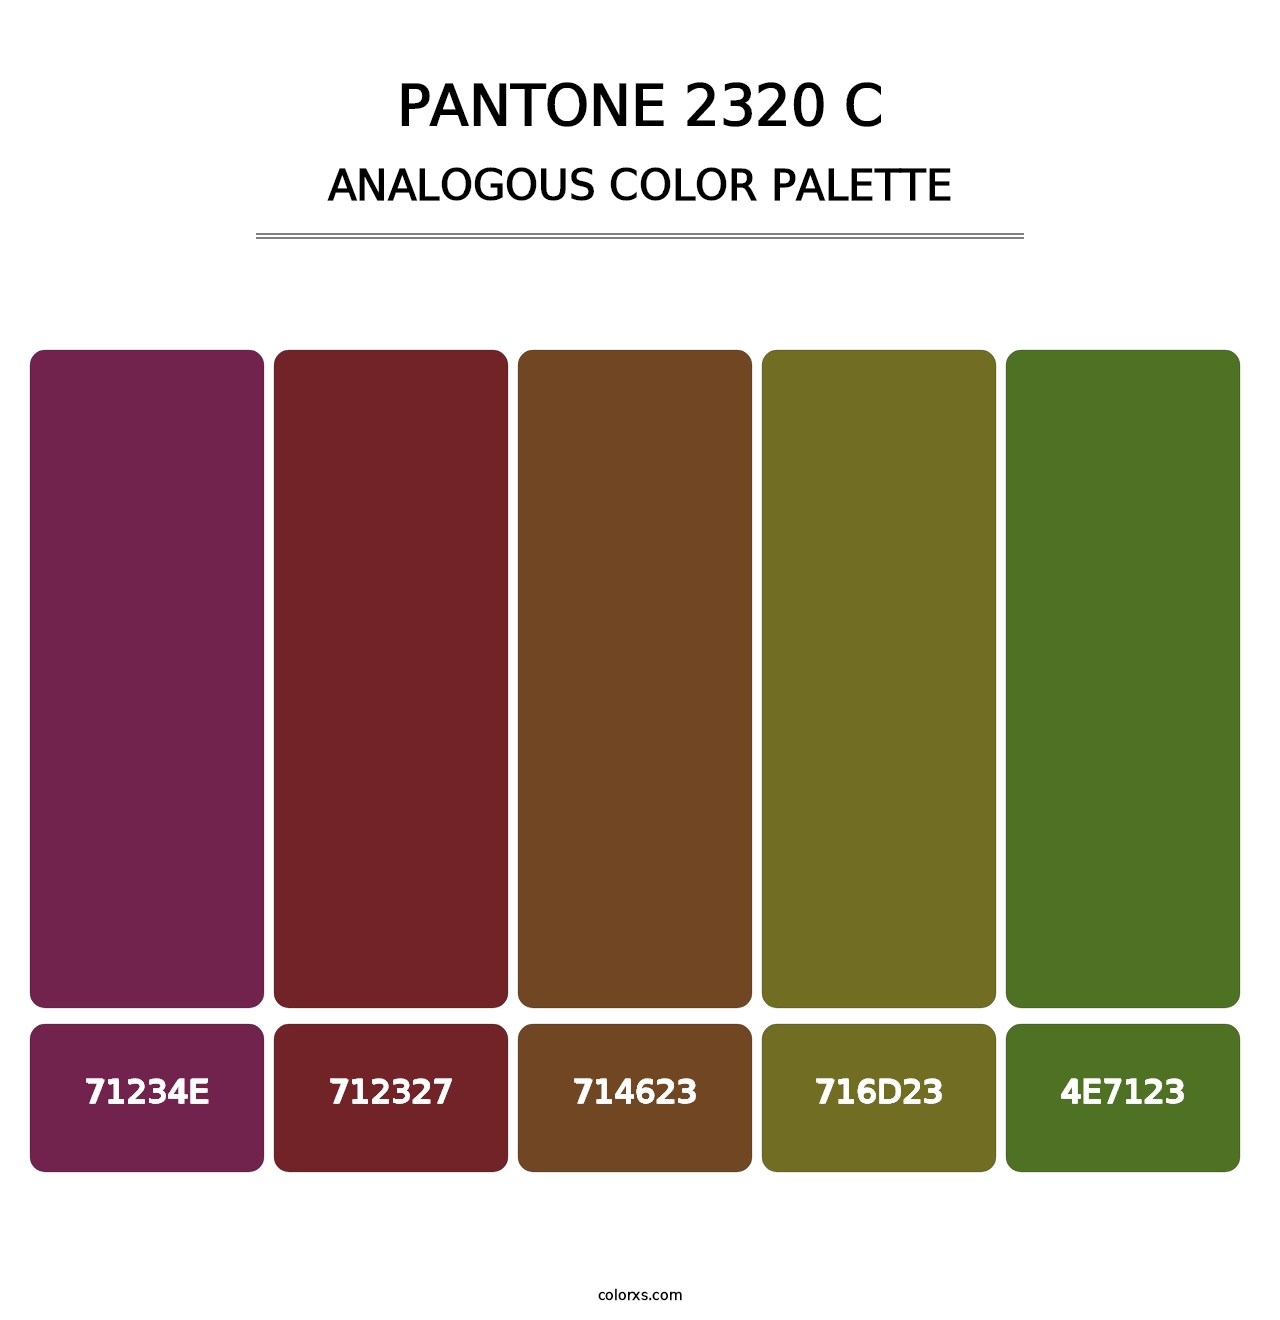 PANTONE 2320 C - Analogous Color Palette